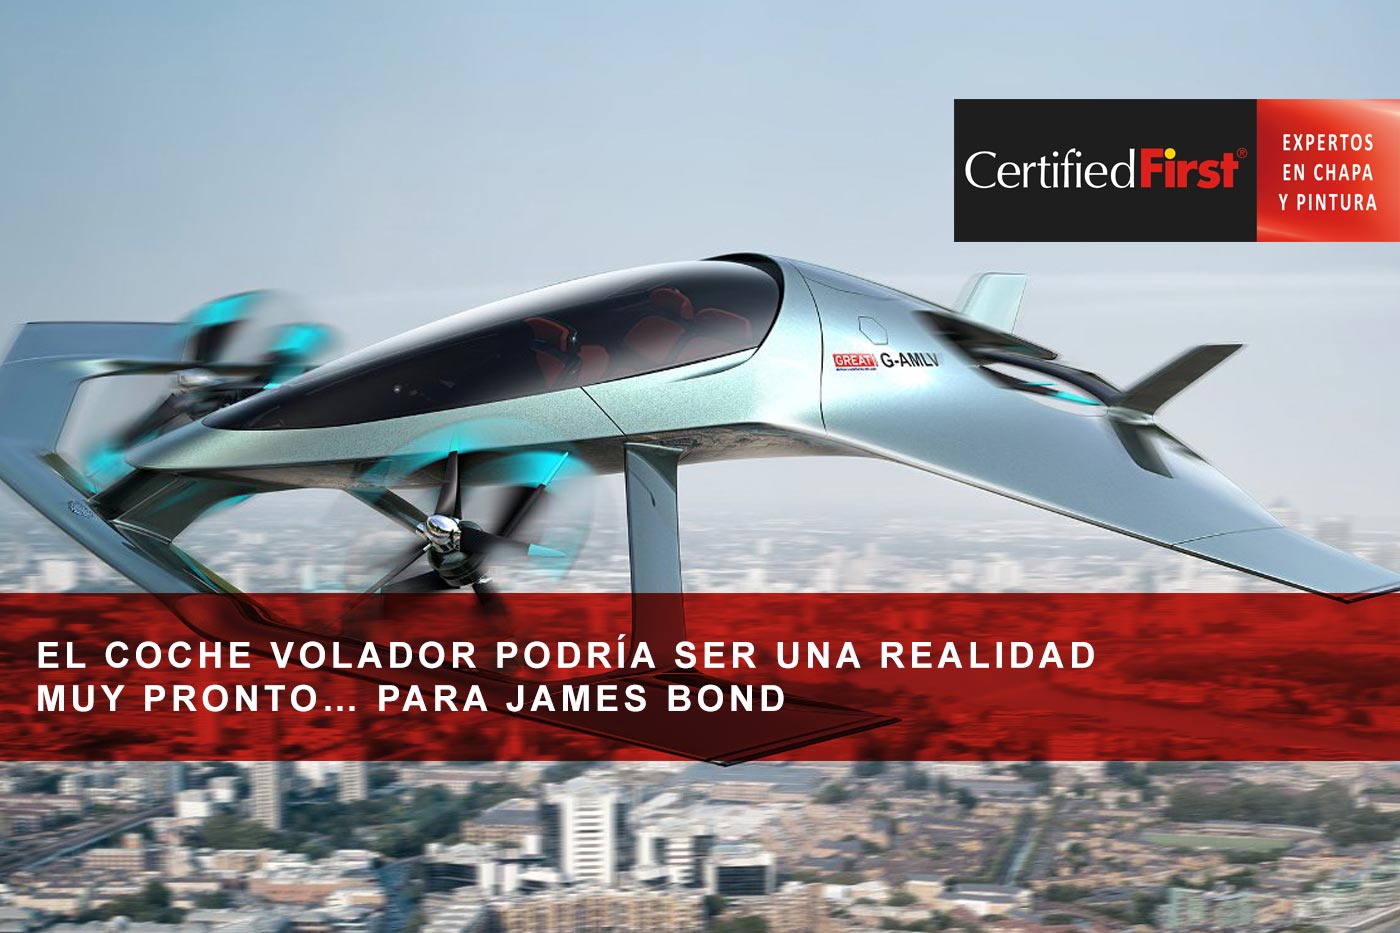 El coche volador podría ser una realidad muy pronto… para James Bond